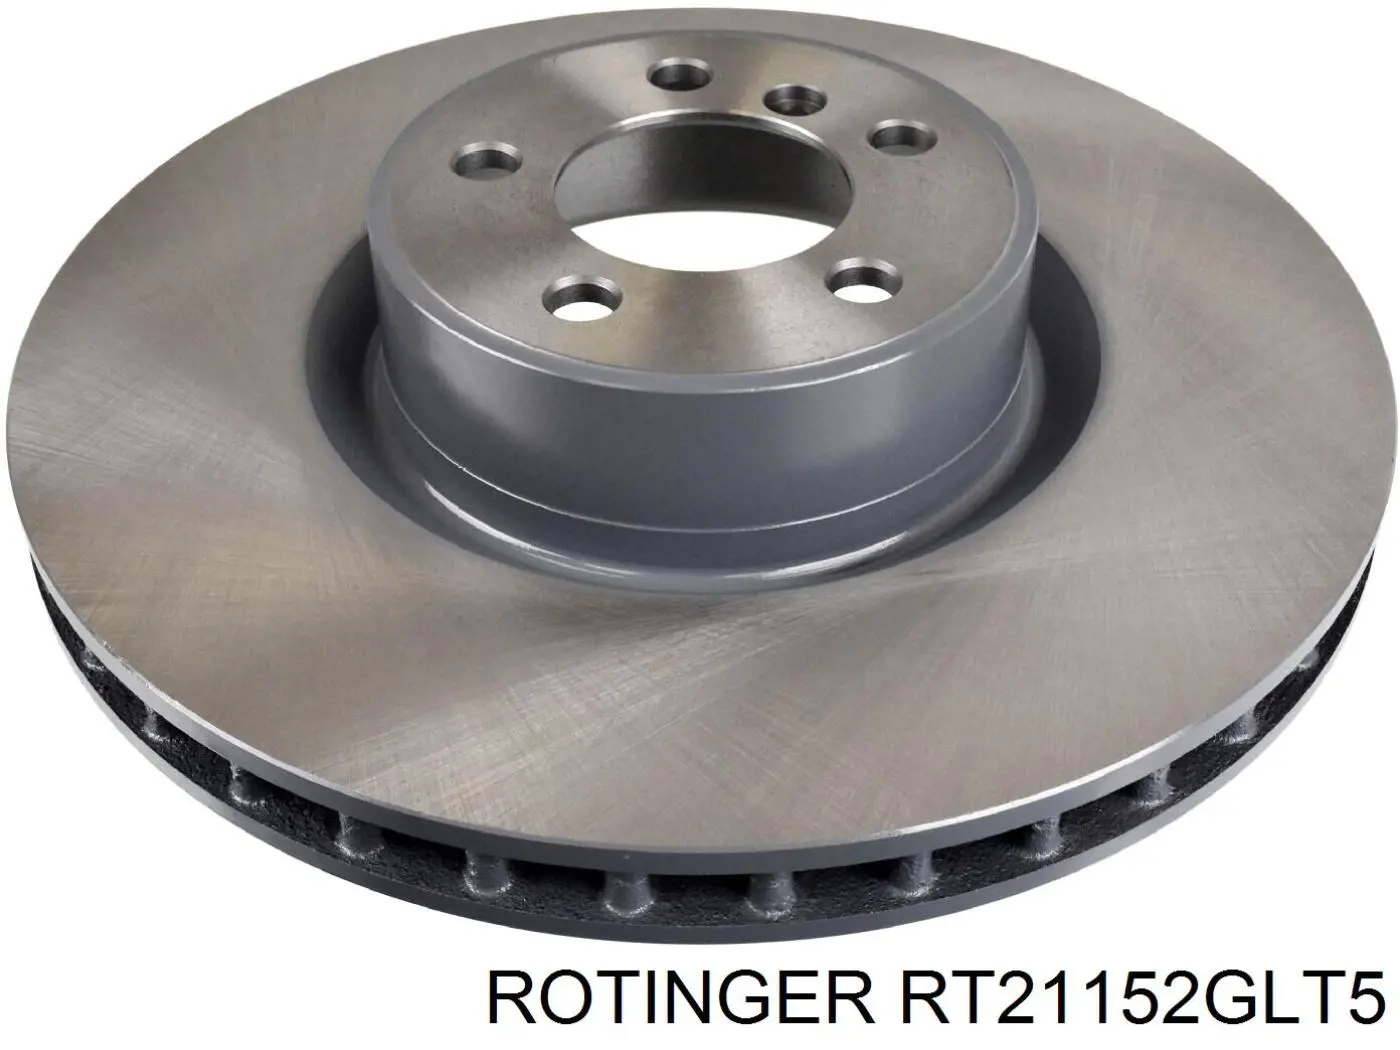 RT21152GLT5 Rotinger disco do freio dianteiro